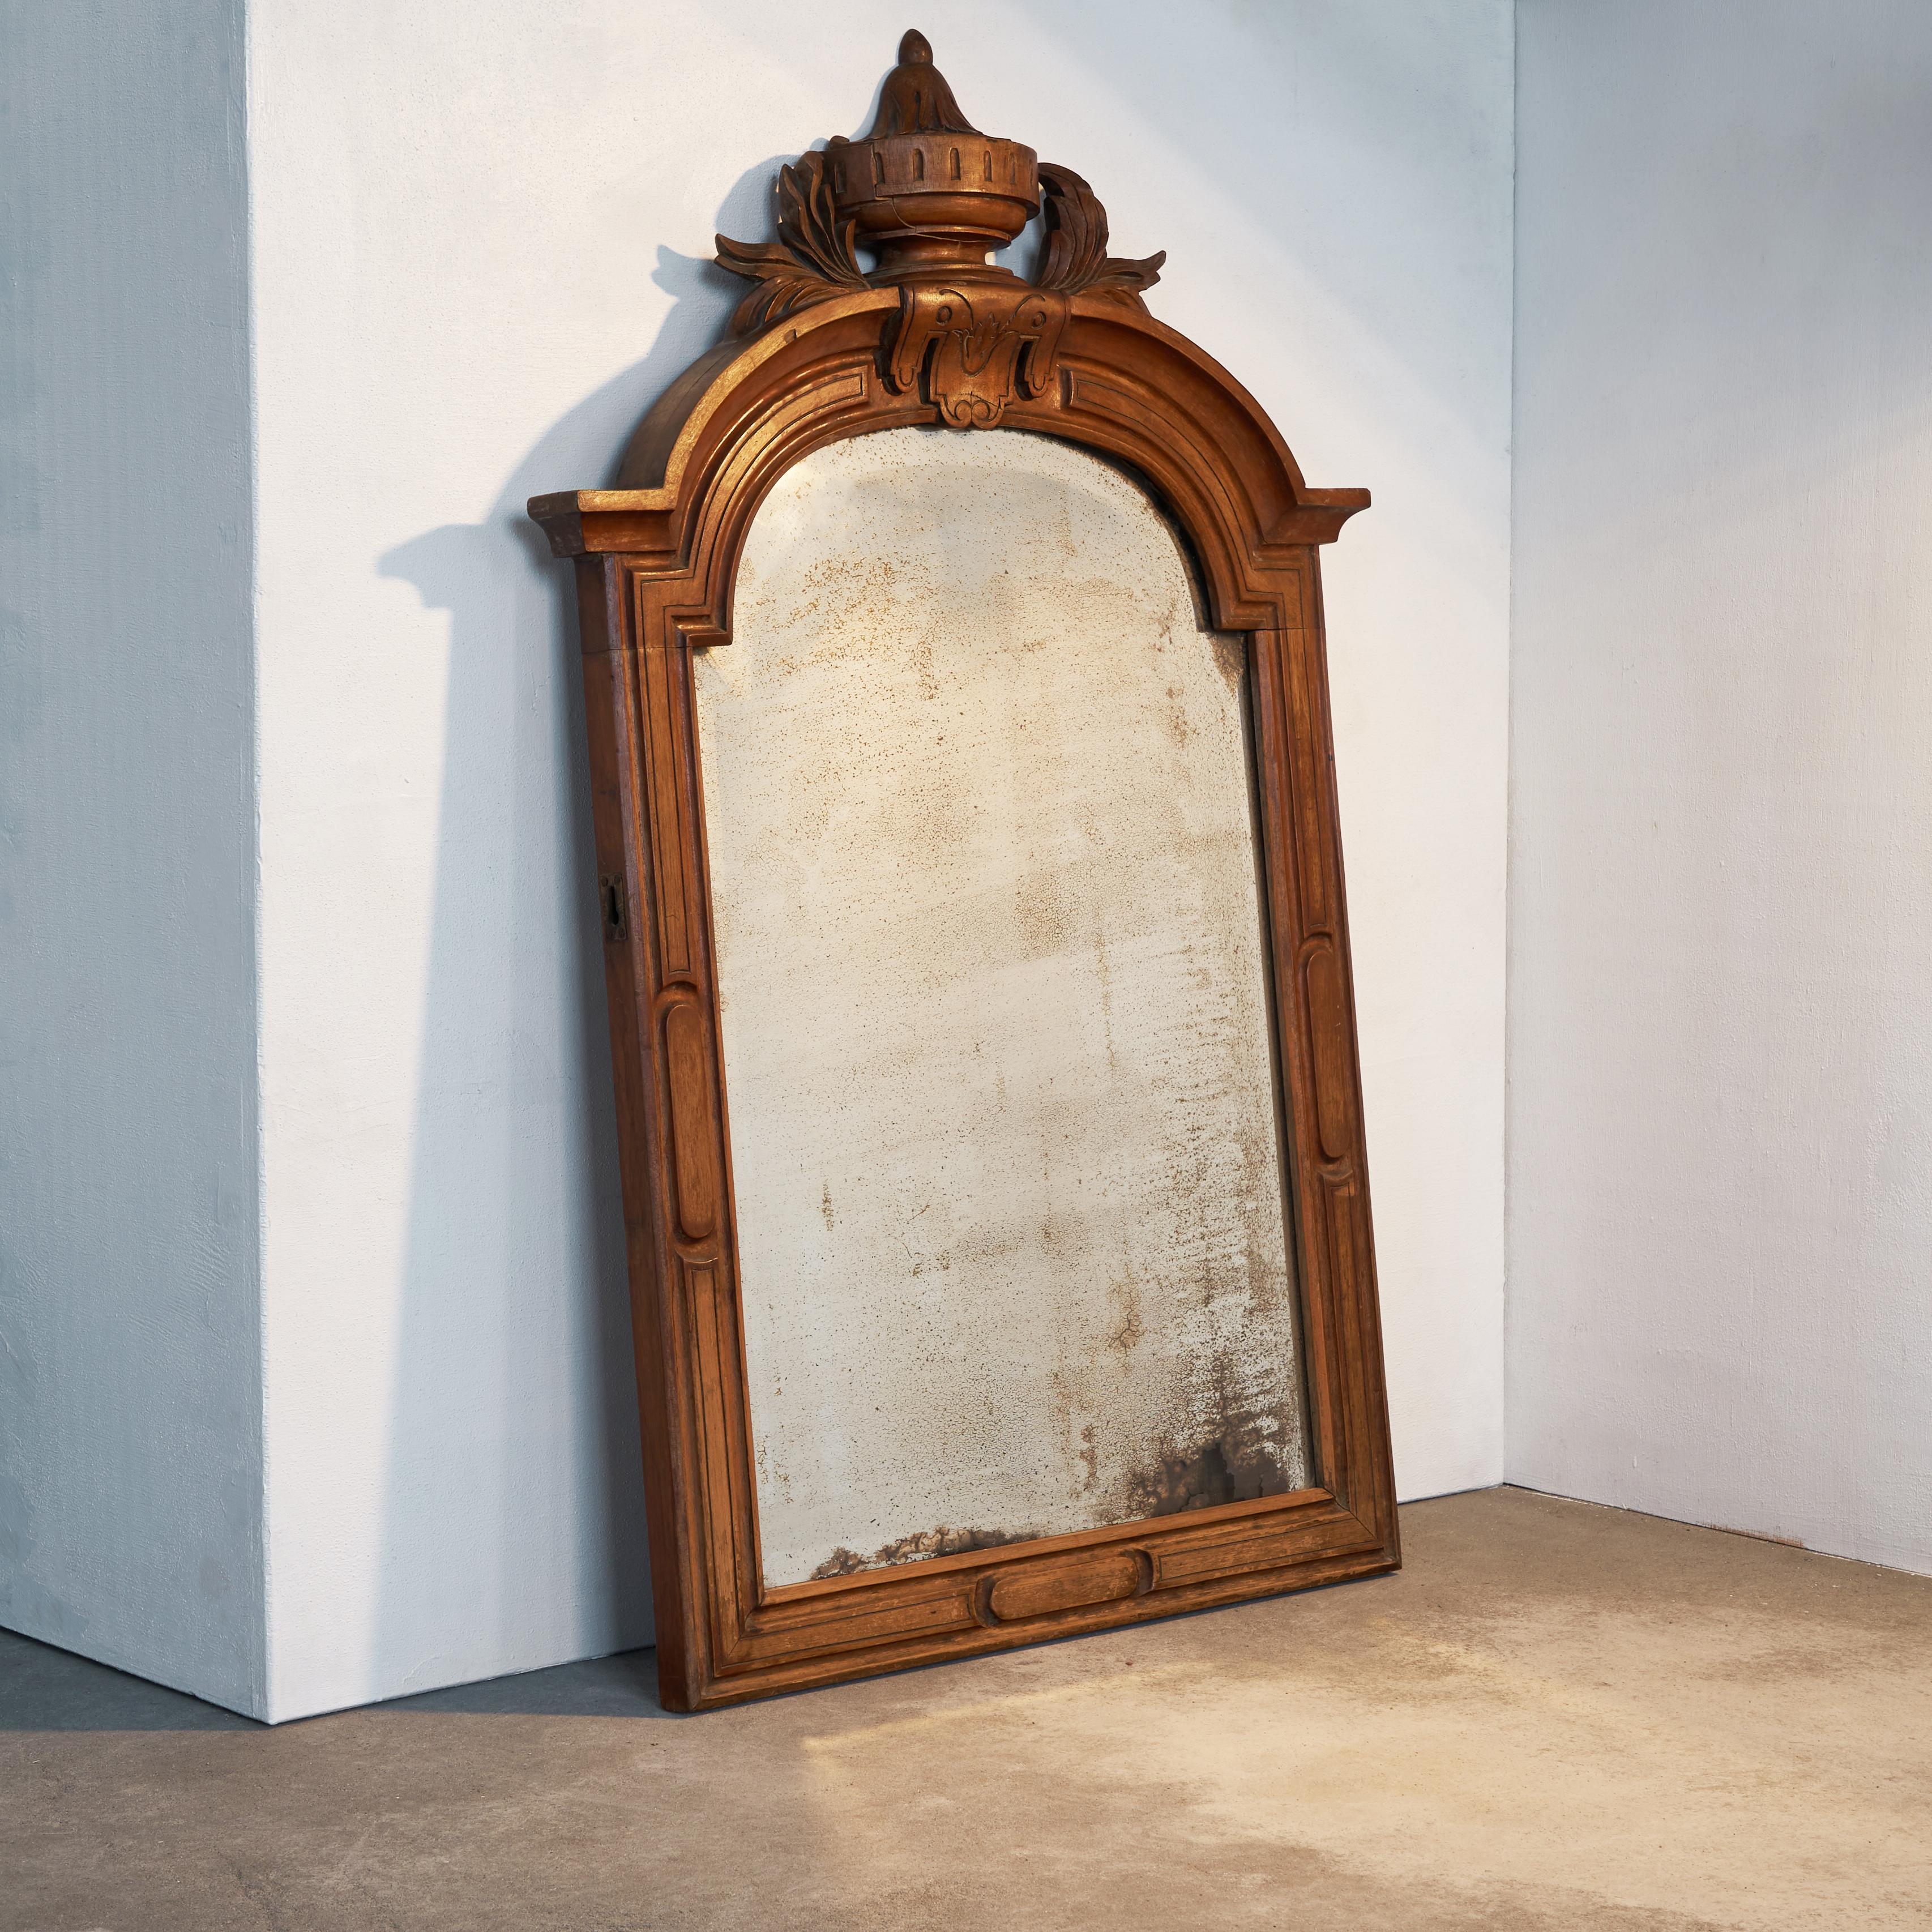 Patinierter Spiegel in geschnitztem Mahagoni-Rahmen, Ende 19. Jahrhundert.

Dies ist ein sehr dekorativer Spiegel in einem schön geschnitzten Rahmen aus Mahagoni. Die stilvolle Dekoration ist klassisch, aber nicht übertrieben. Das Besondere an